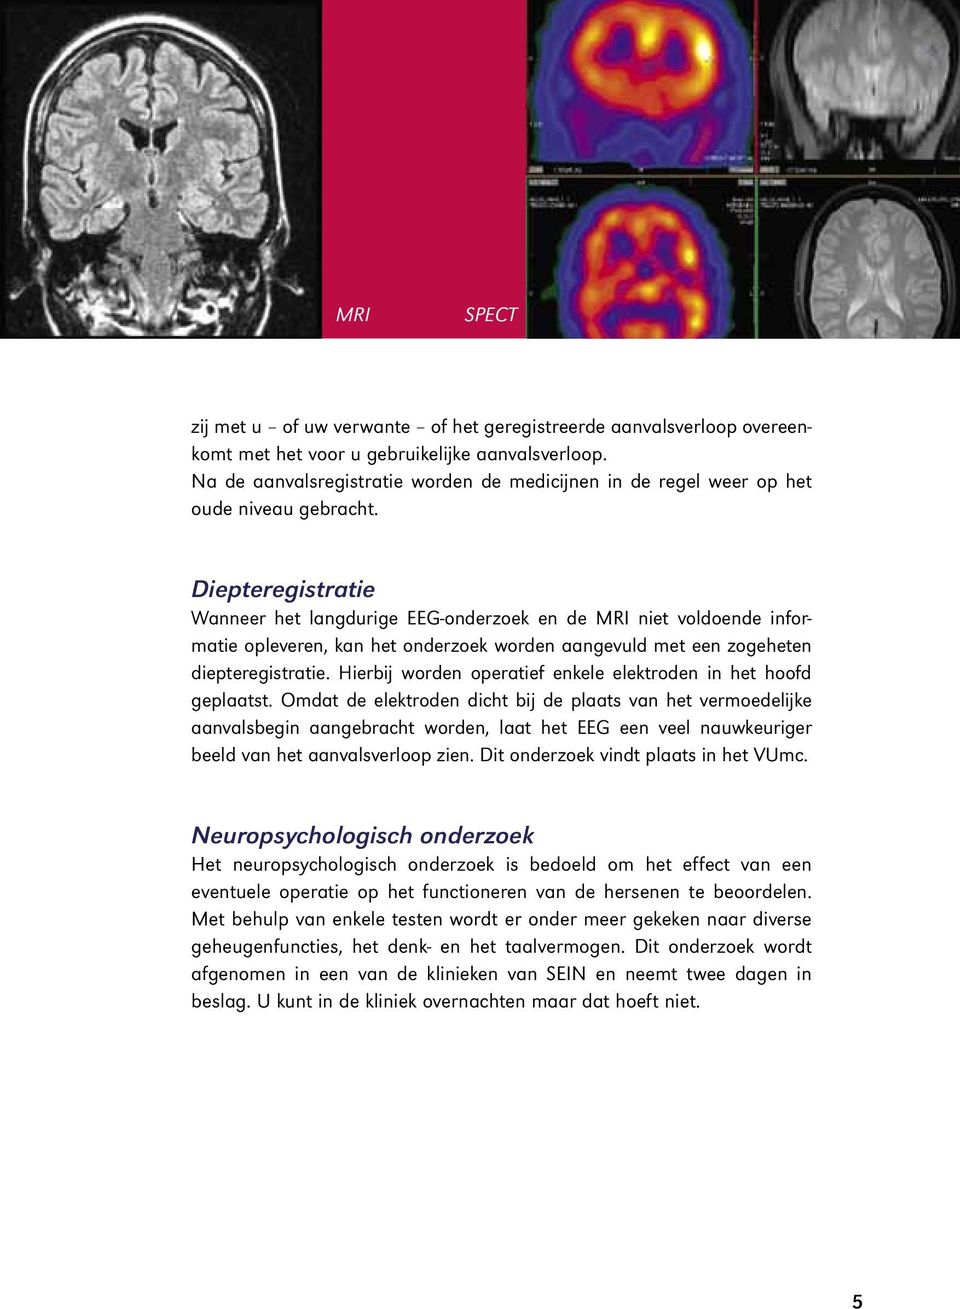 Diepteregistratie Wanneer het langdurige EEG-onderzoek en de MRI niet voldoende informatie opleveren, kan het onderzoek worden aangevuld met een zogeheten diepteregistratie.